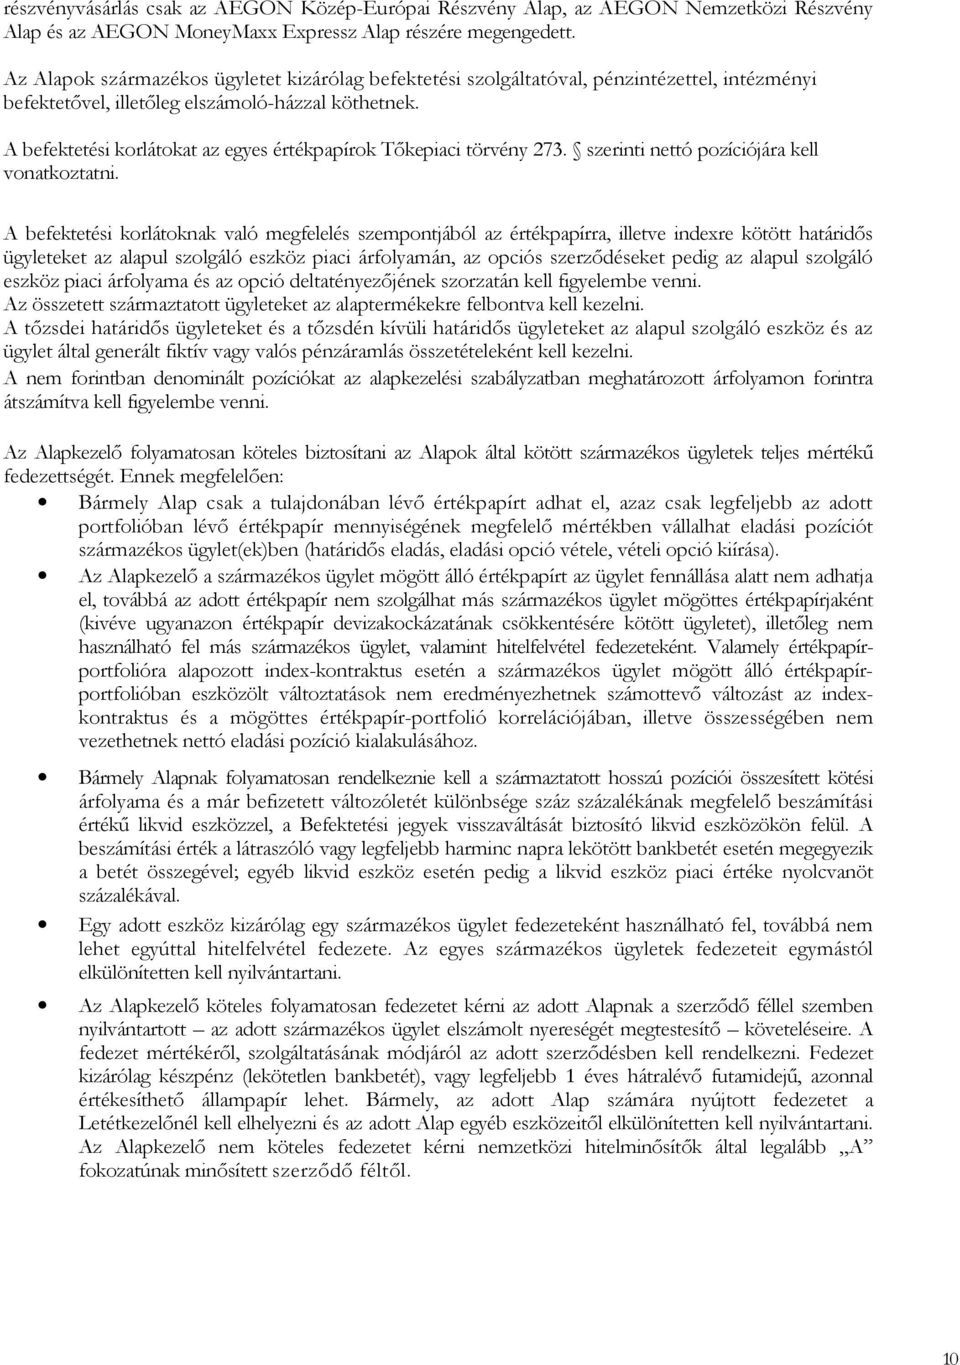 A befektetési korlátokat az egyes értékpapírok Tıkepiaci törvény 273. szerinti nettó pozíciójára kell vonatkoztatni.